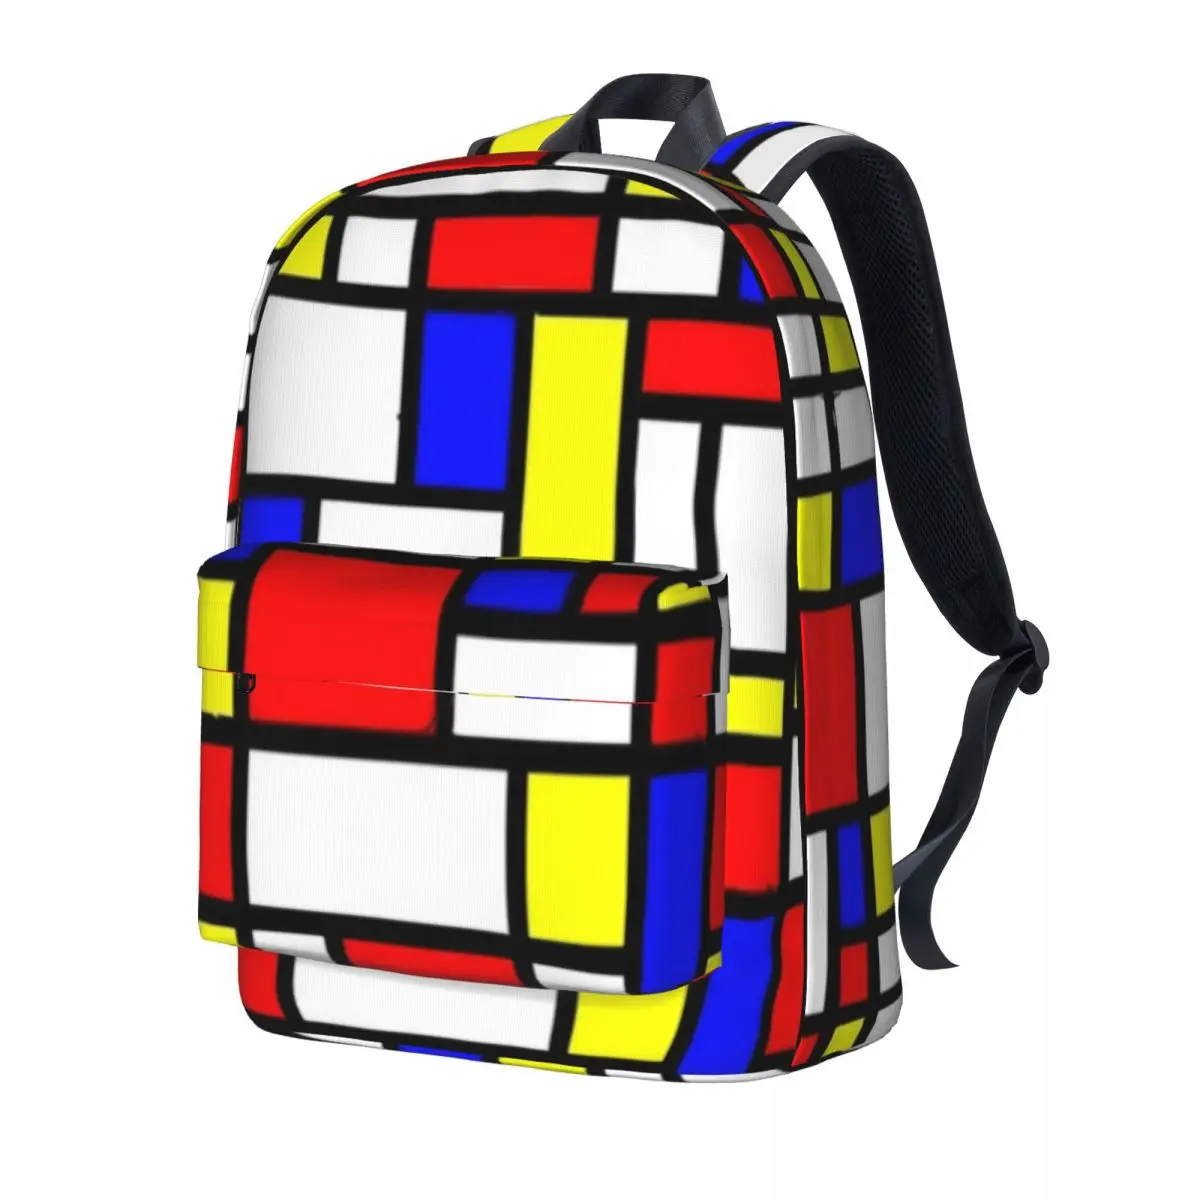 

Цветной рюкзак с геометрическим принтом, рюкзаки для колледжа в стиле пэчворк с геометрическим рисунком, Молодежные сумки для старшей школы с цветным рисунком, модный рюкзак